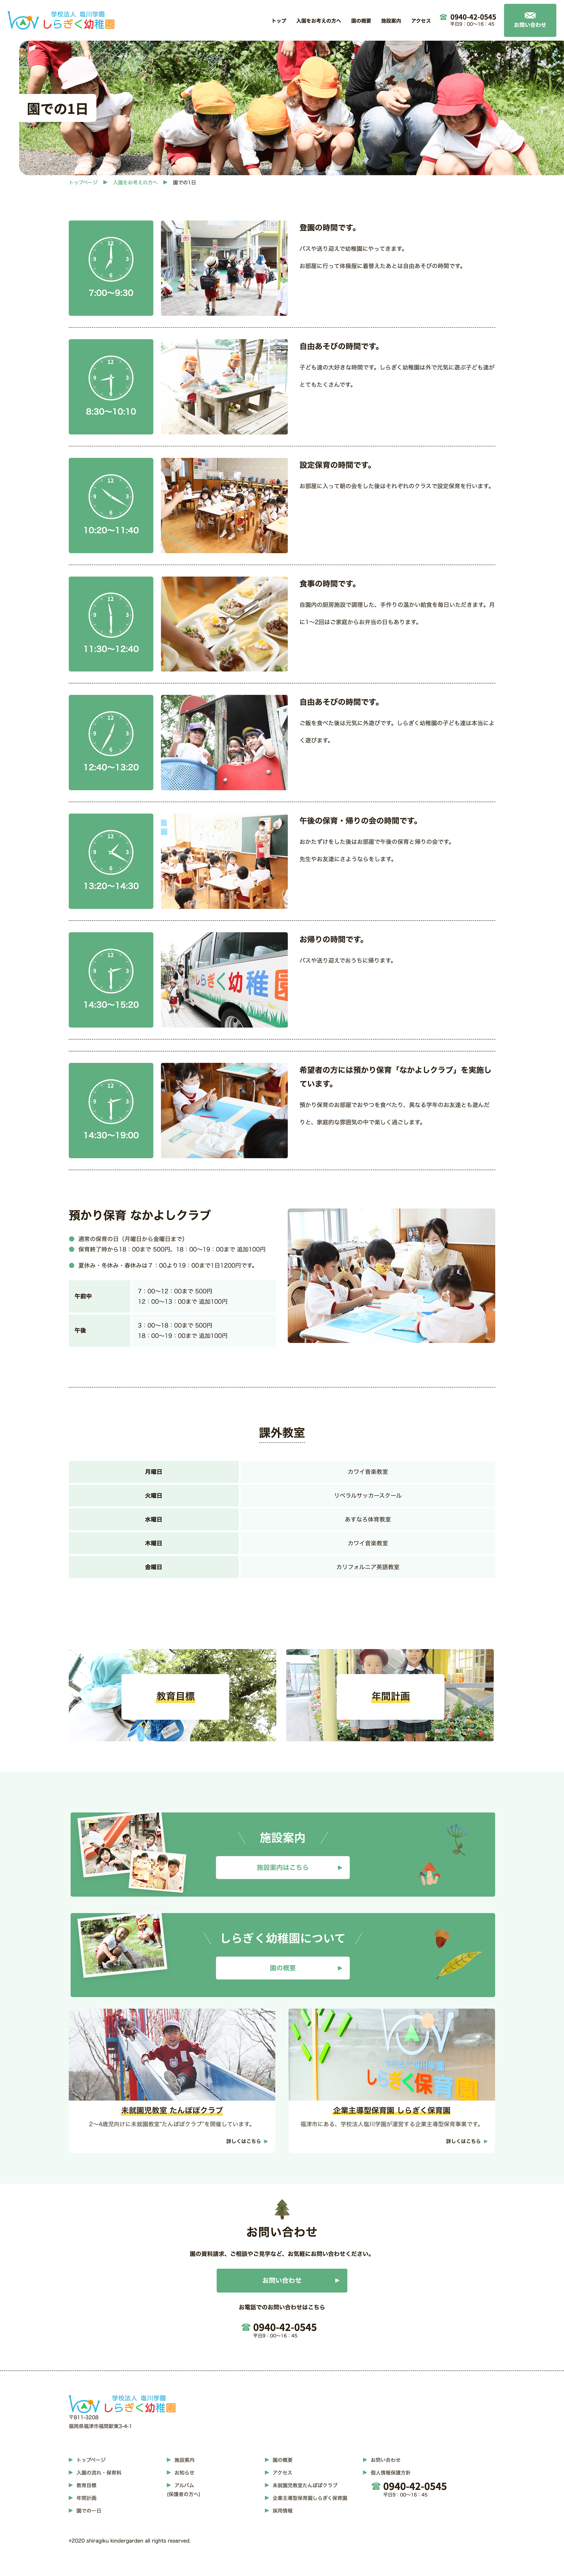 学校法⼈塩川学園 しらぎく幼稚園様 desktop image